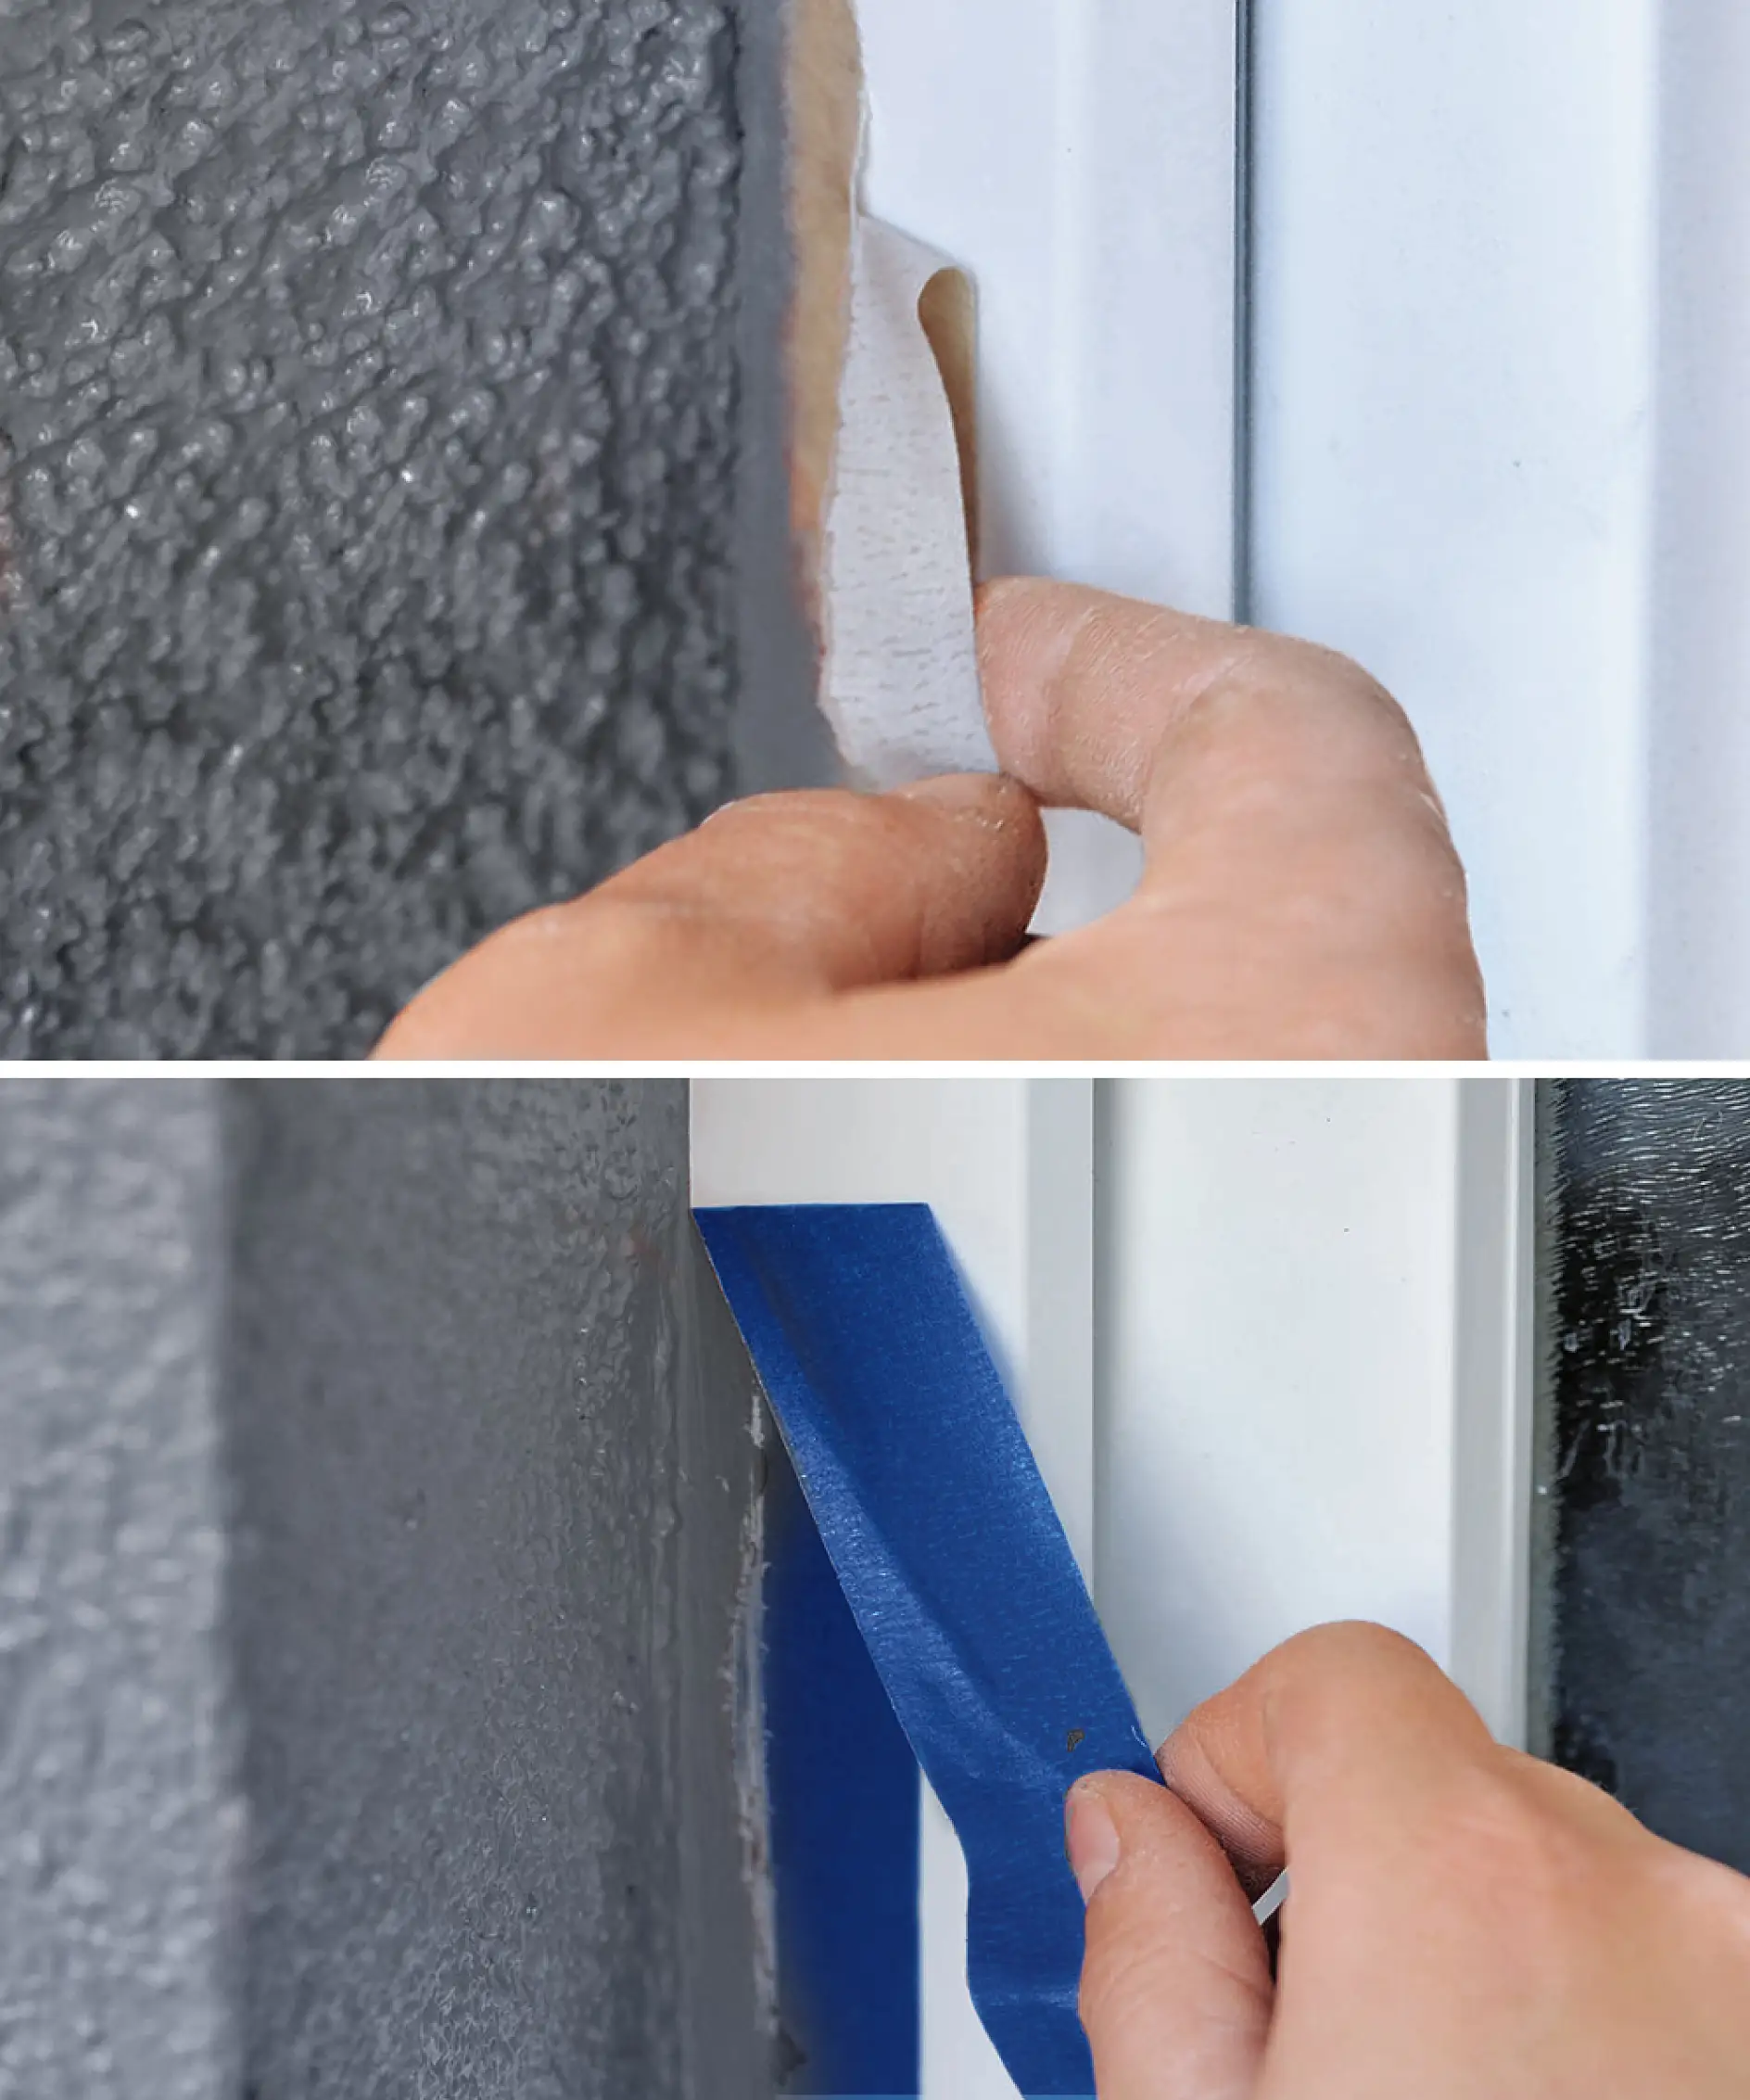 PVC-ikkunoiden suojaus voi olla hankalaa, jos käyttää väärää teippiä.